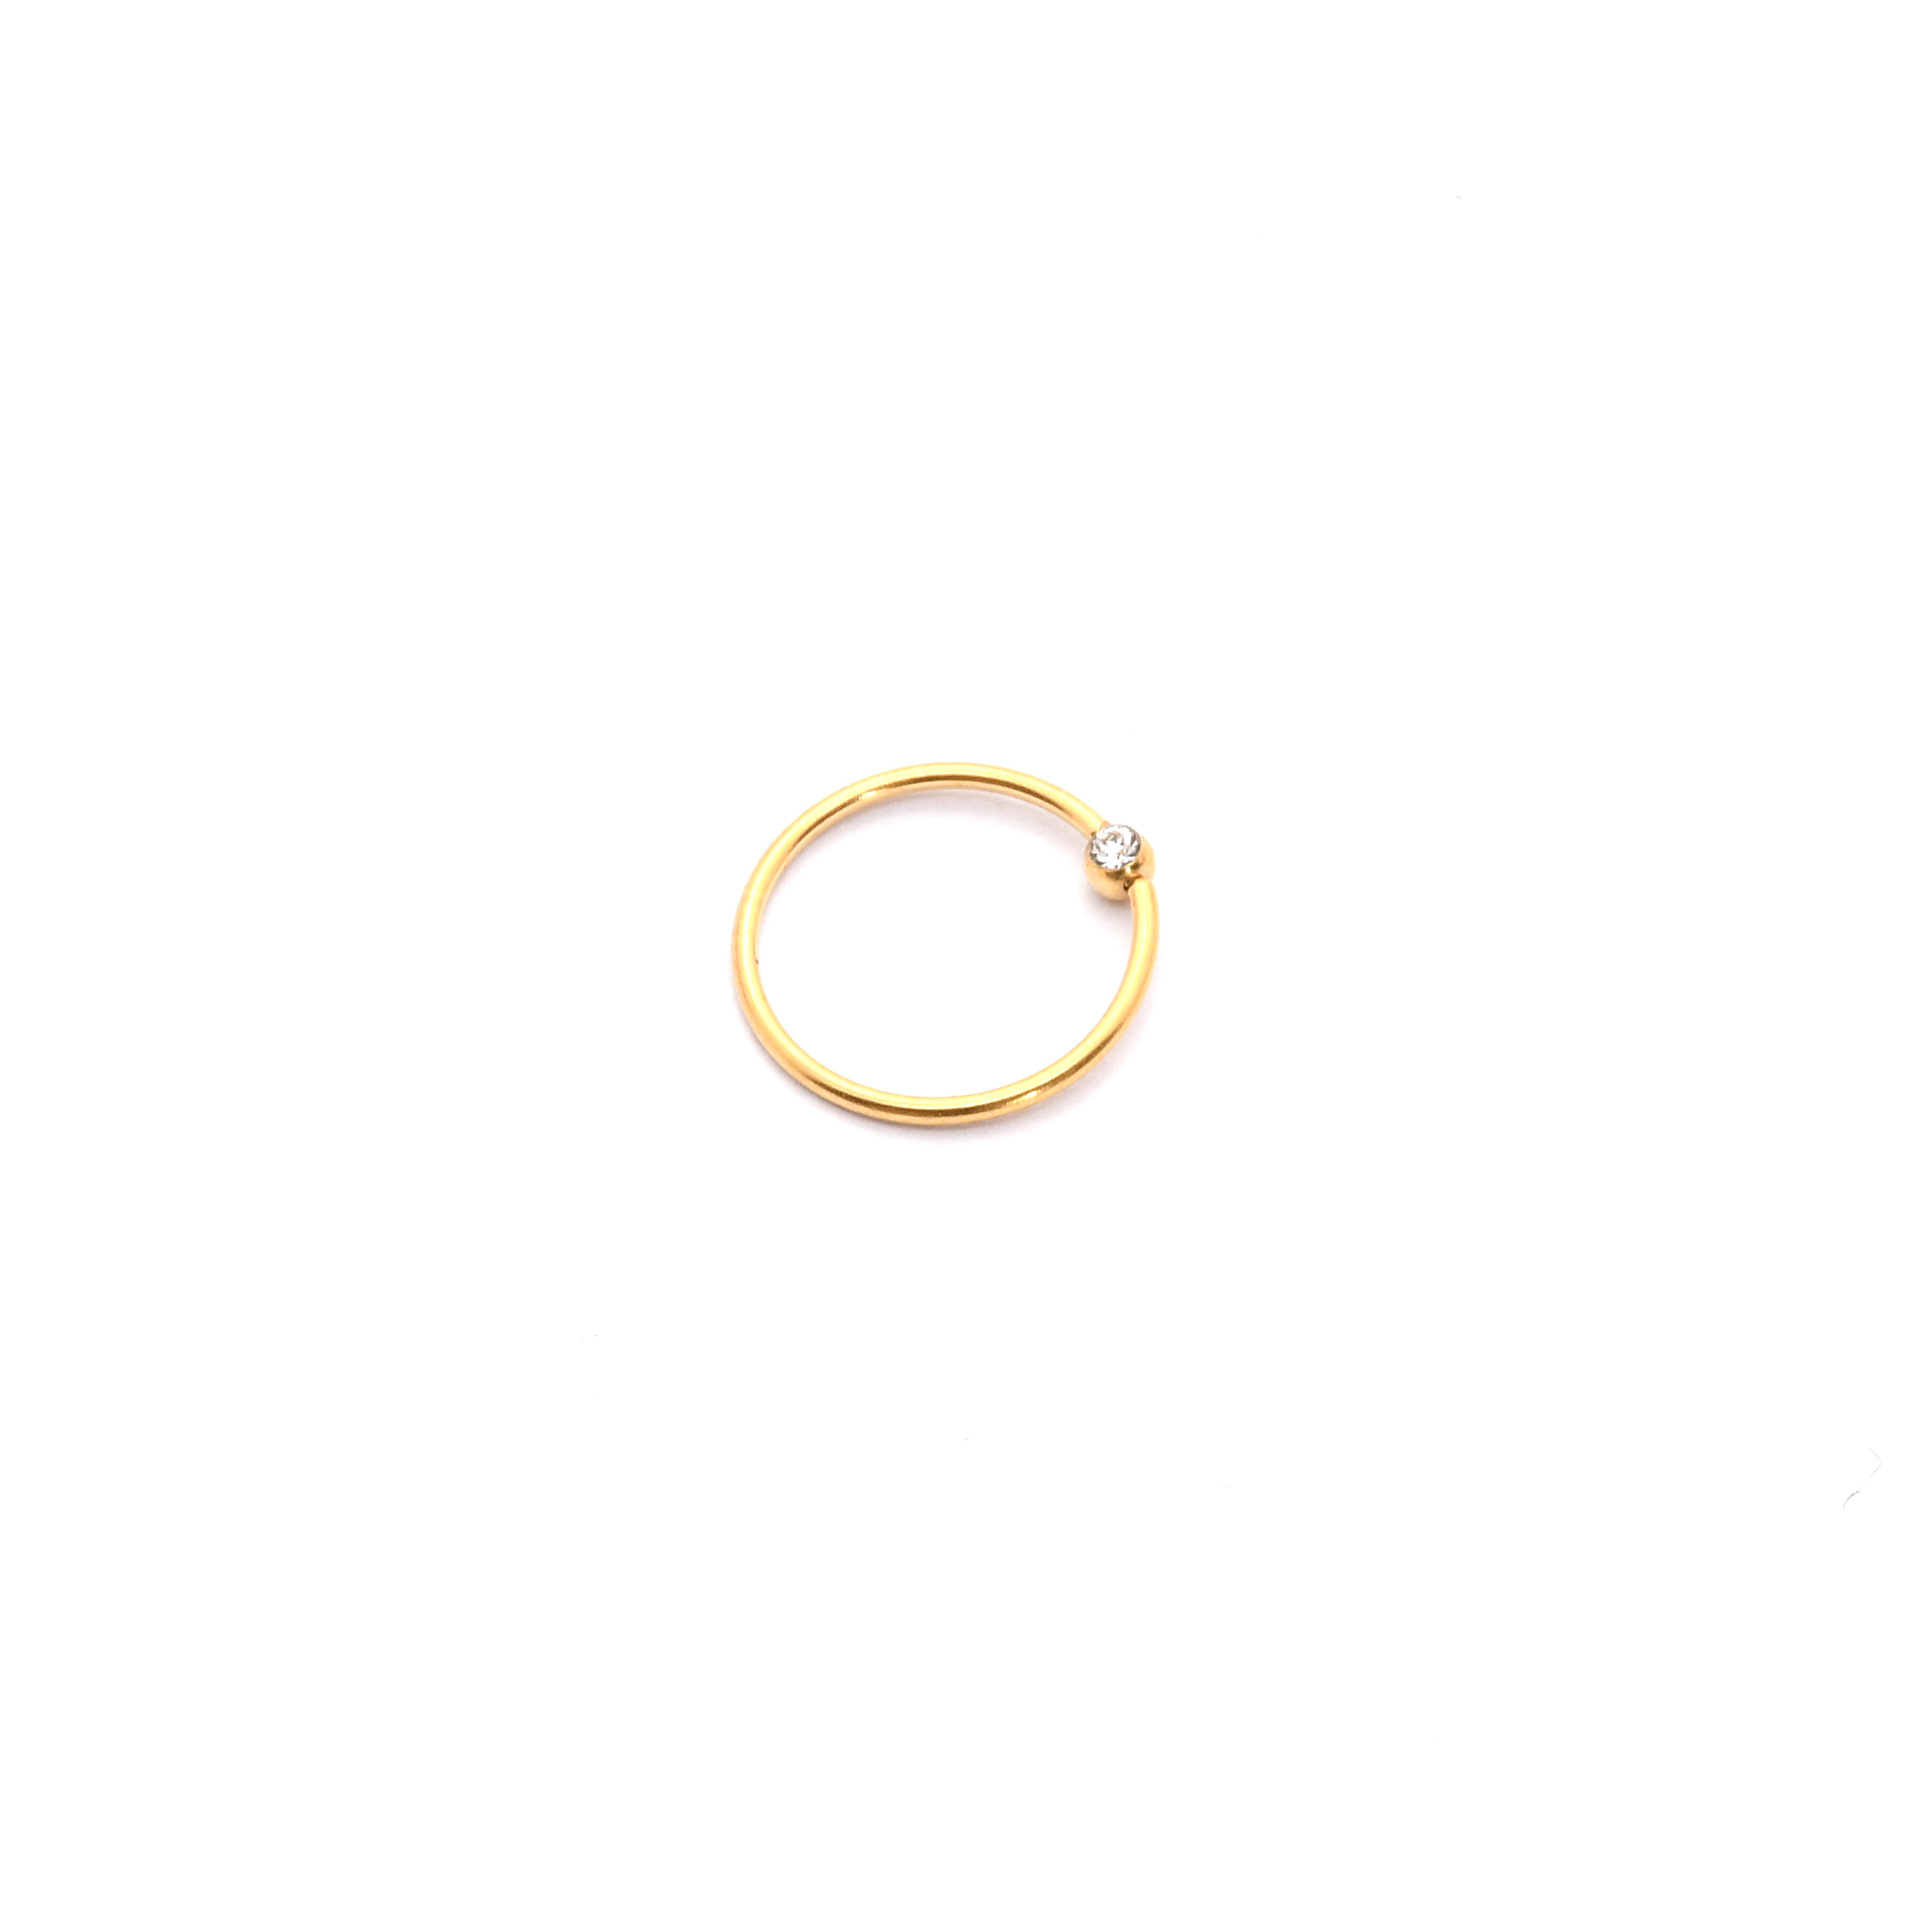 Gold inner diameter 6mm